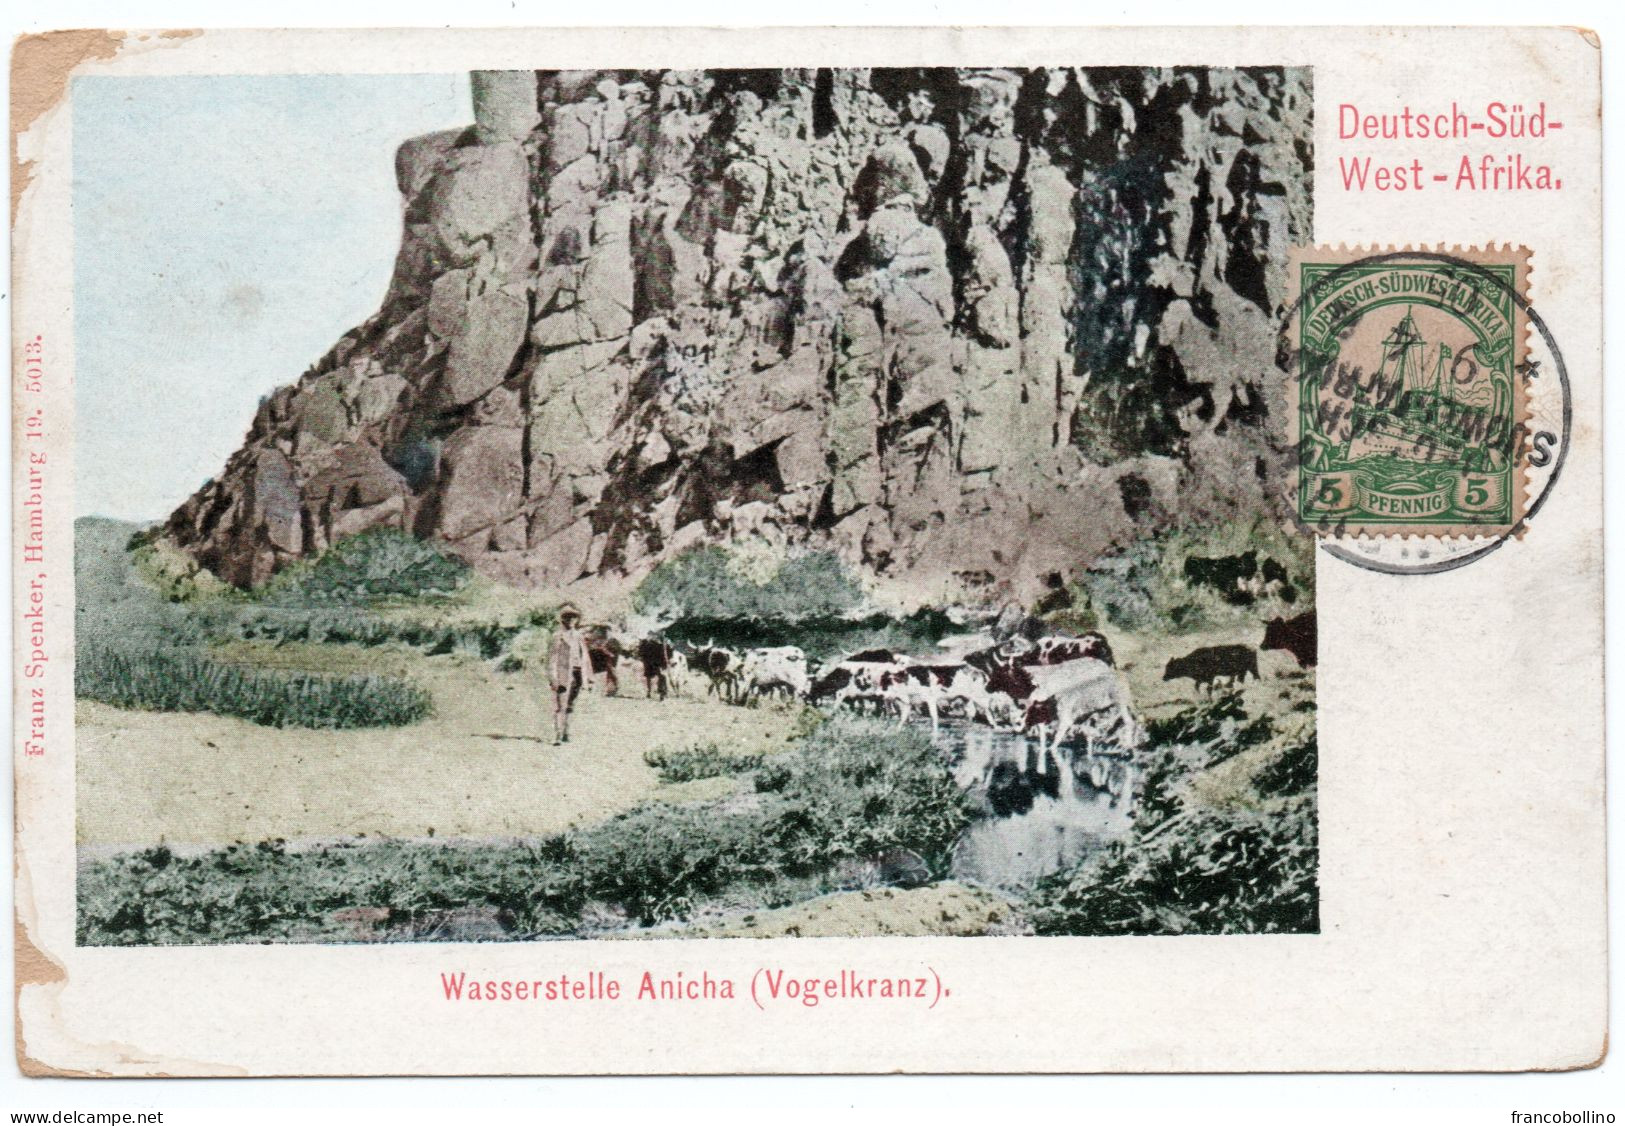 SOUTHWEST GERMAN AFRICA / NAMIBIA -WASSERSTELLE ANICHA (VOGELKRANZ) - WINDHUK CANCEL 1905 - German South West Africa